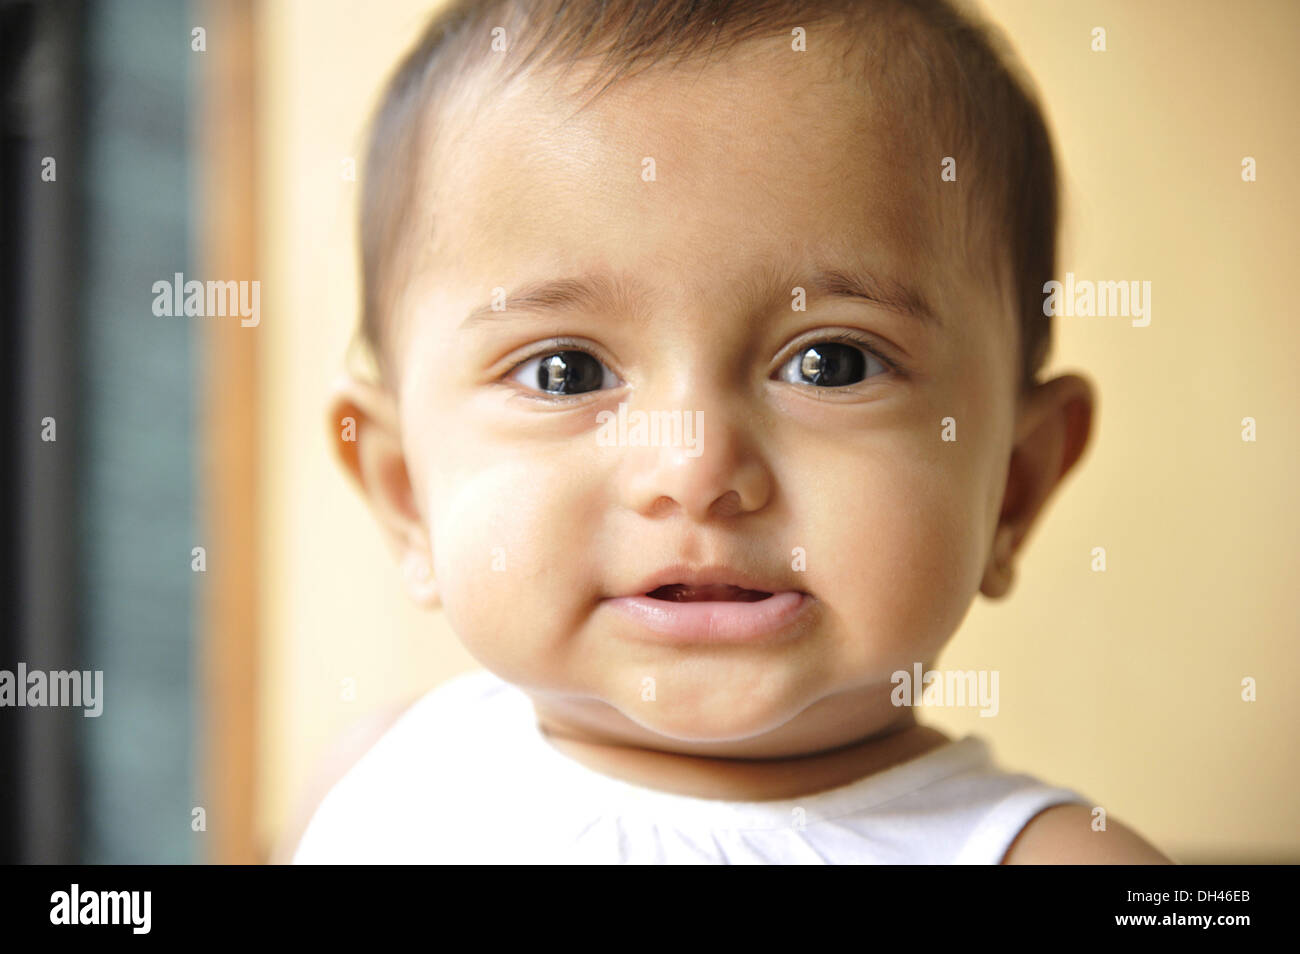 Indische Baby Gesicht Porträt closeup auf Kamera Augenkontakt Indien Herr #736 LA Stockfoto